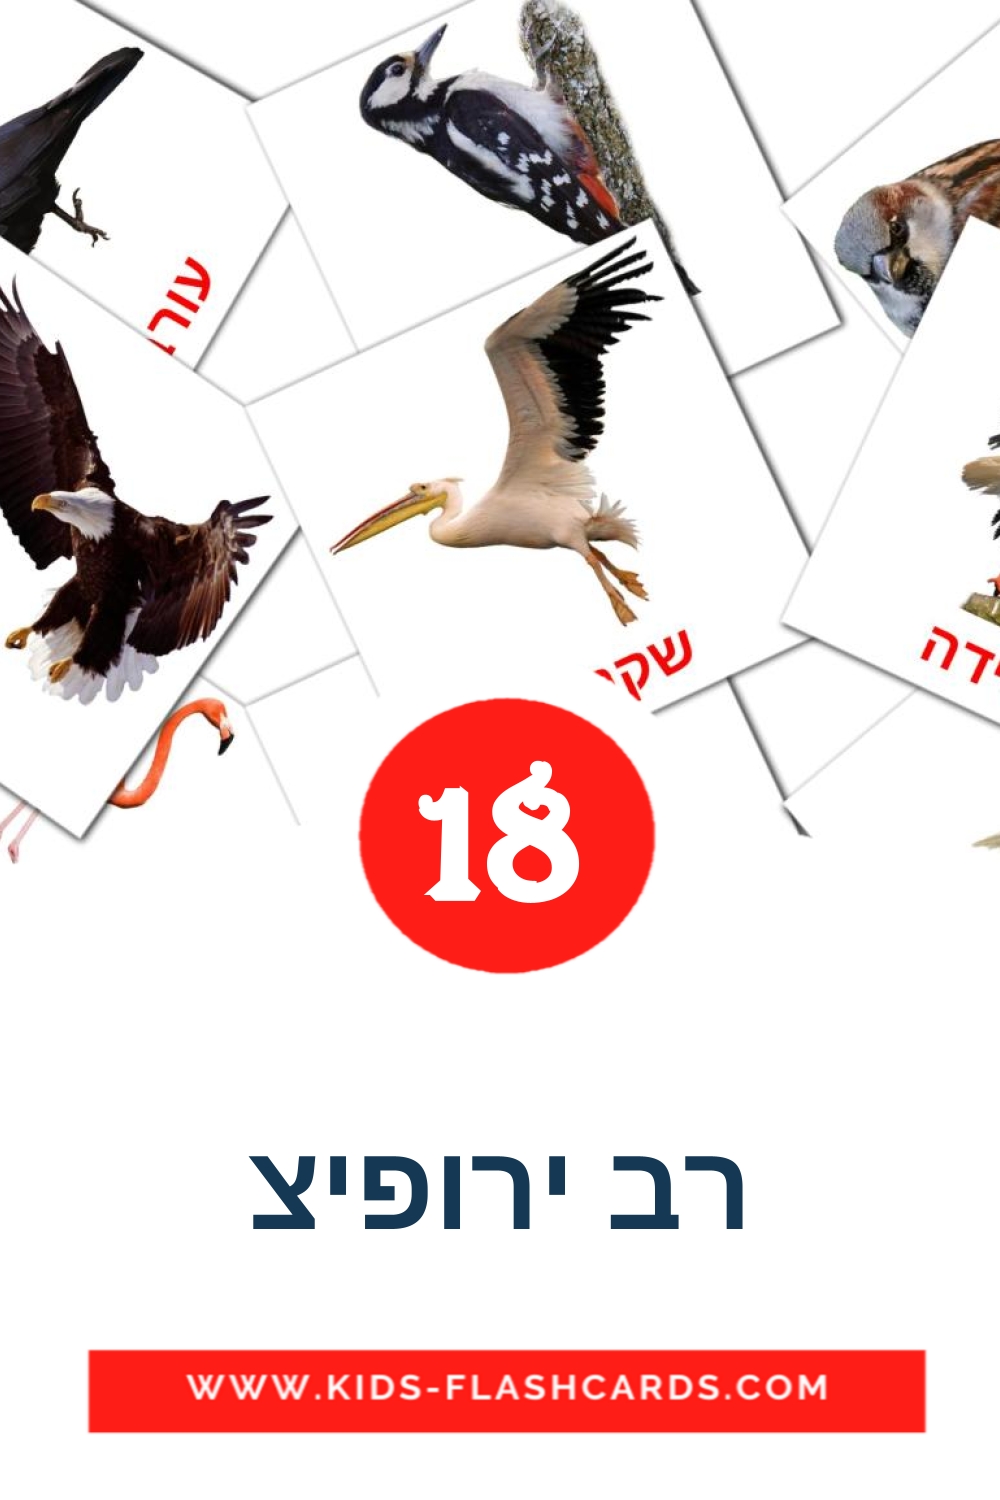 18 carte illustrate di רב ירופיצ per la scuola materna in ebraico